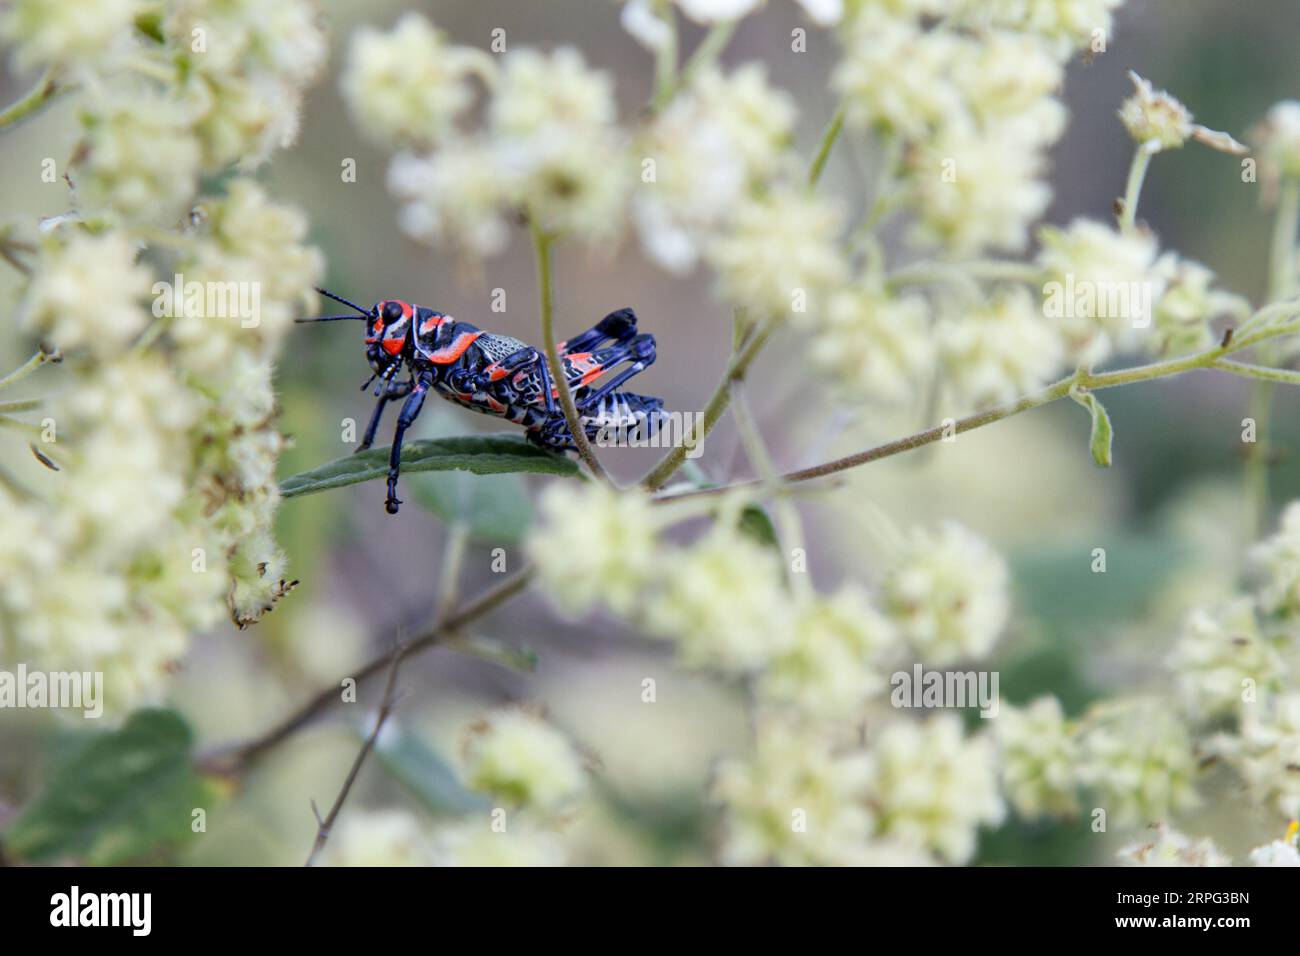 Chapulín o Grasshopper in piedi su un impianto. Blu un insetto rosso. Foto Stock